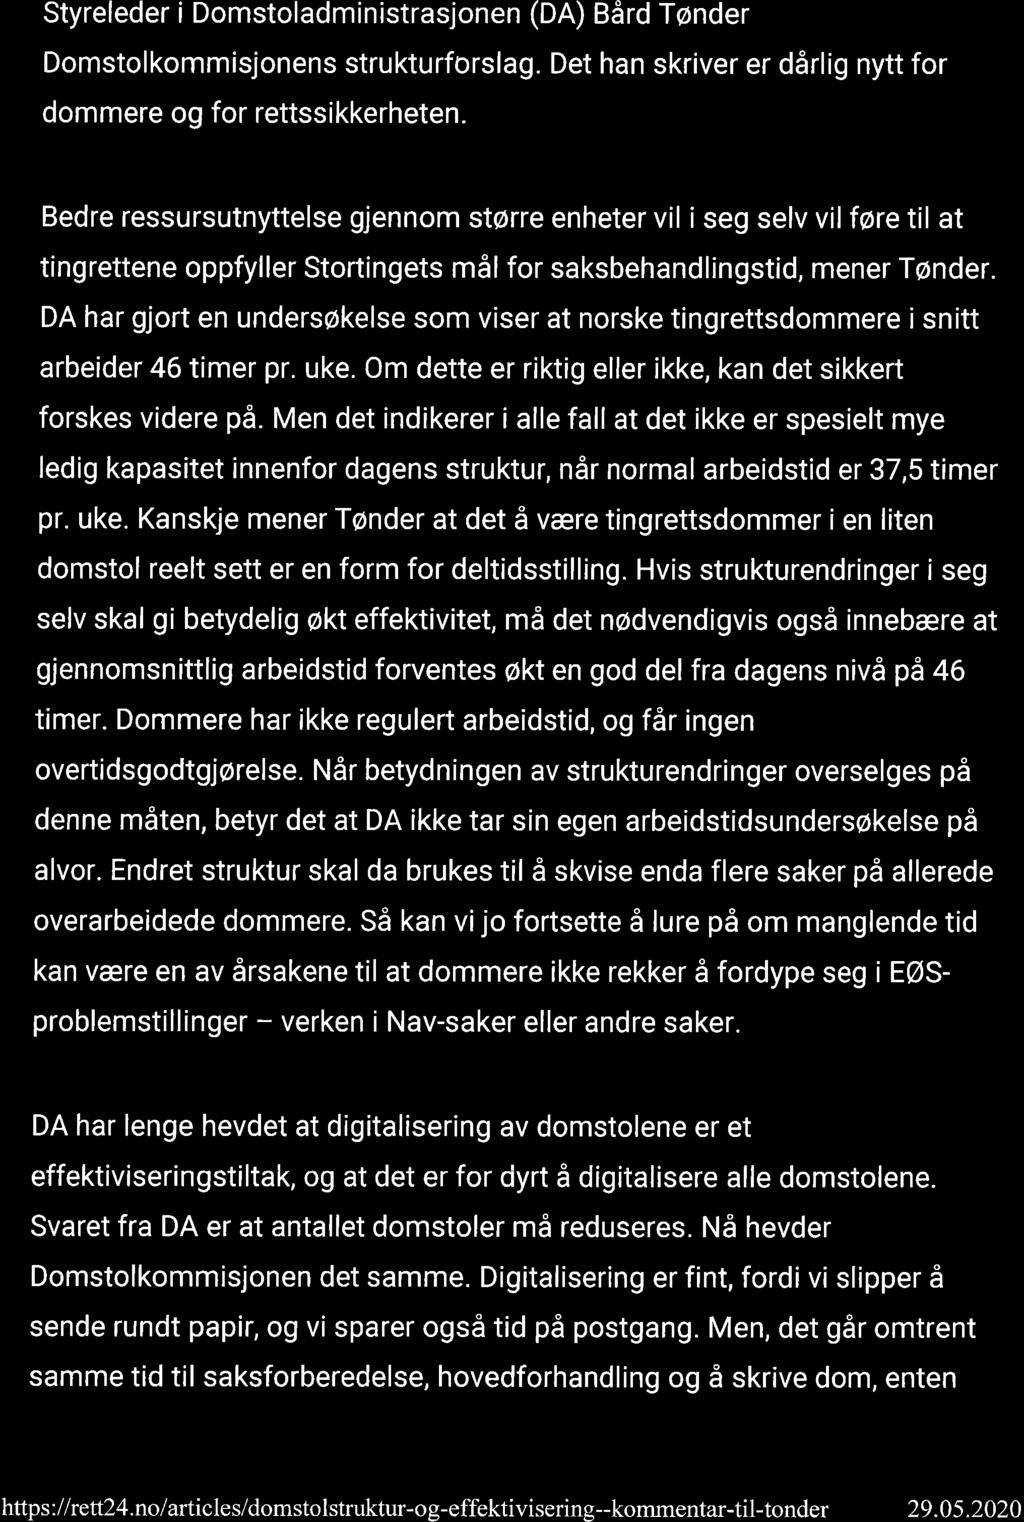 Domstolstruktur og effektivisering - kommentar til Tønder - rett24 Page2 of 6 29.